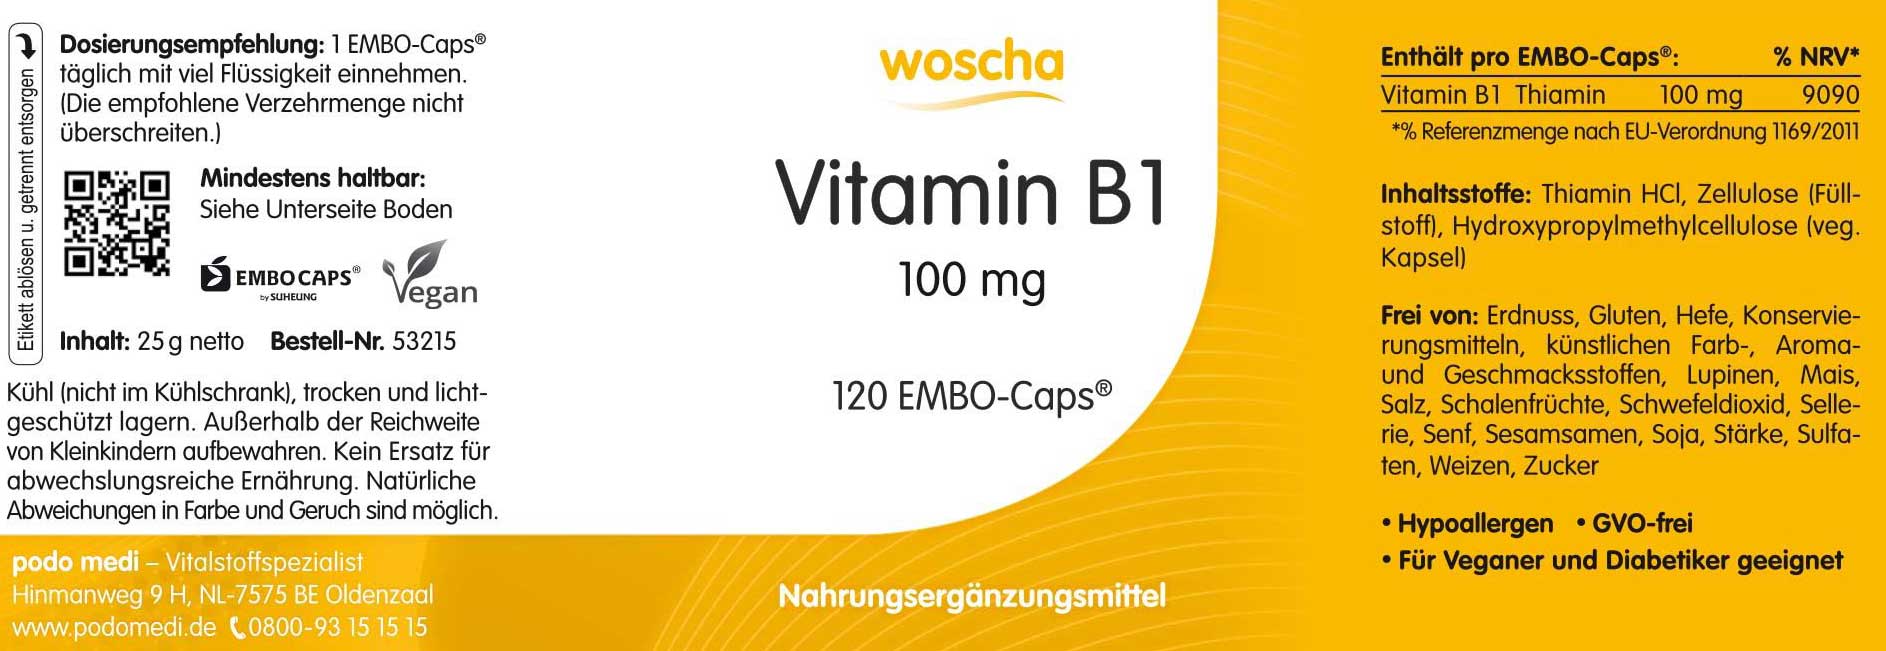 Woscha Vitamin B1 von podo medi beinhaltet 120 Kapseln Etikett